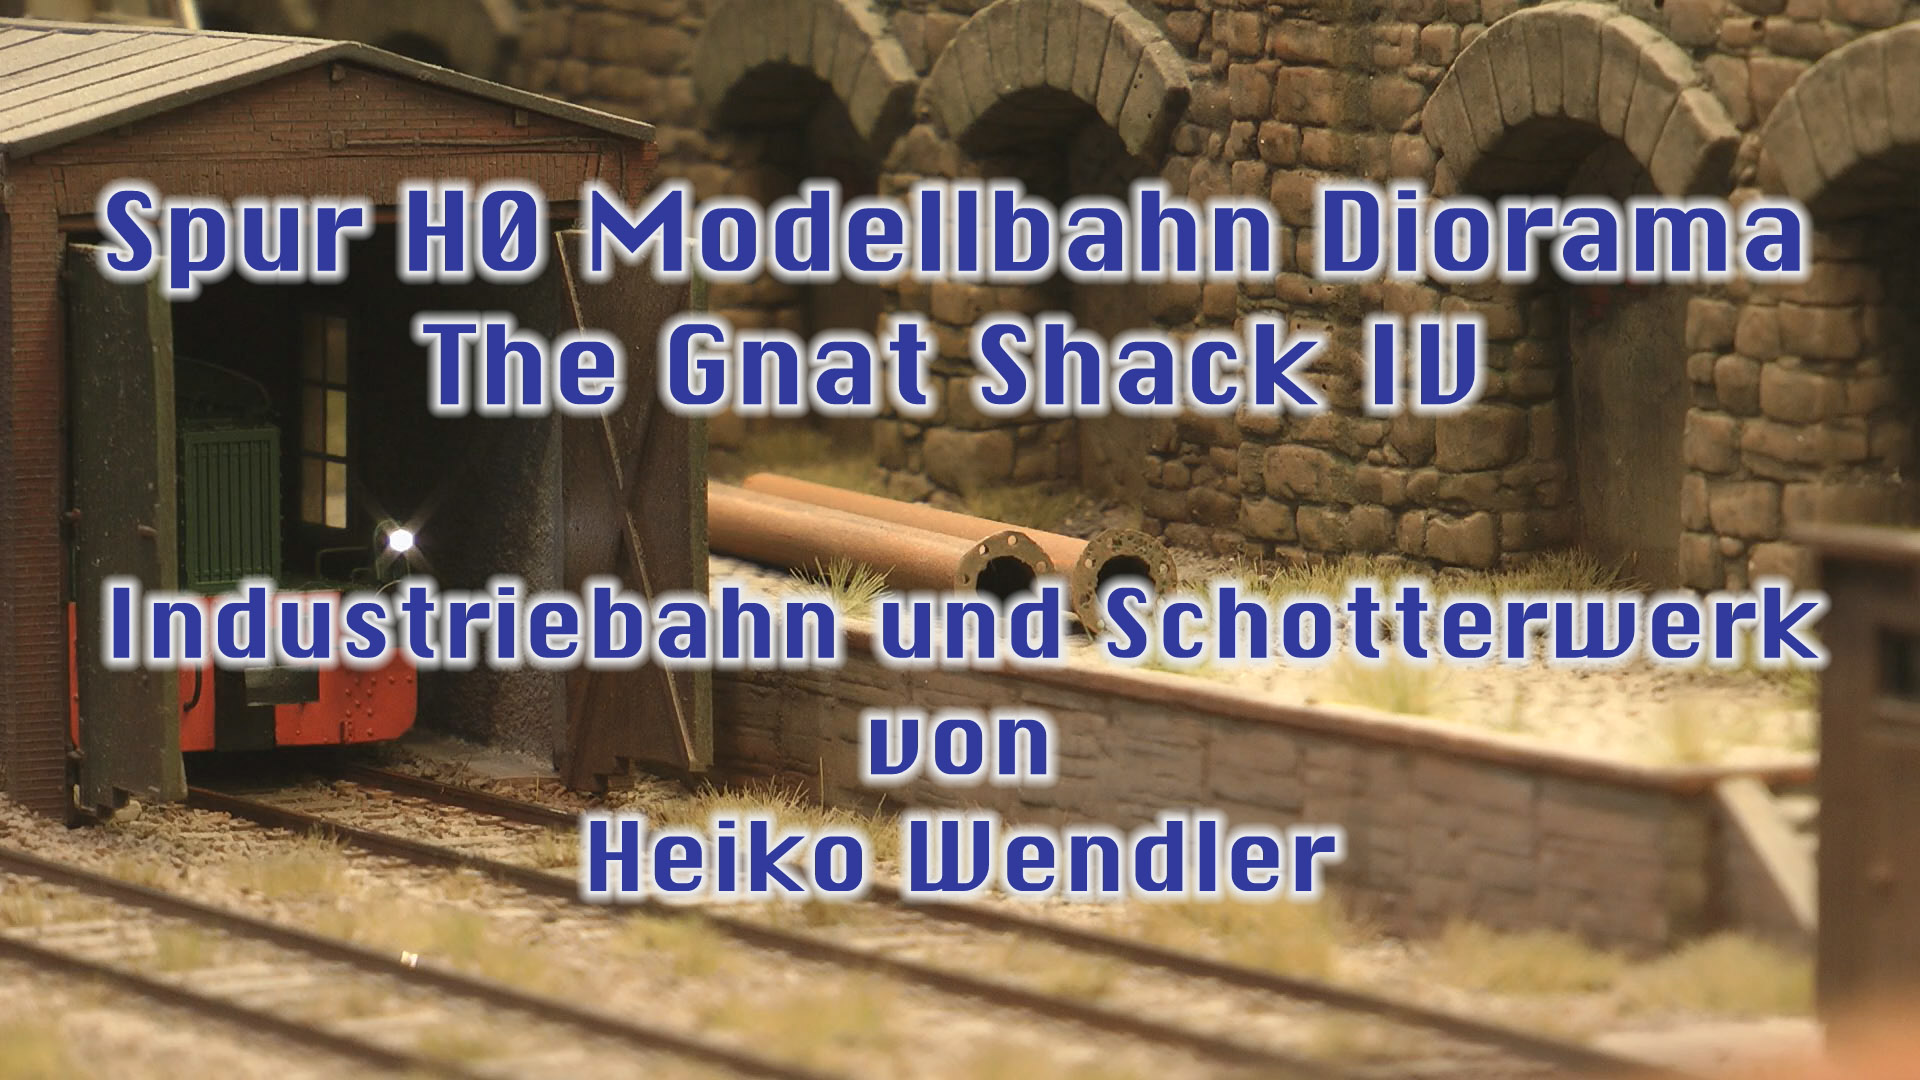 Spur H0 Modellbahn Diorama: The Gnat Shack IV - Industriebahn und Schotterwerk von Heiko Wendler